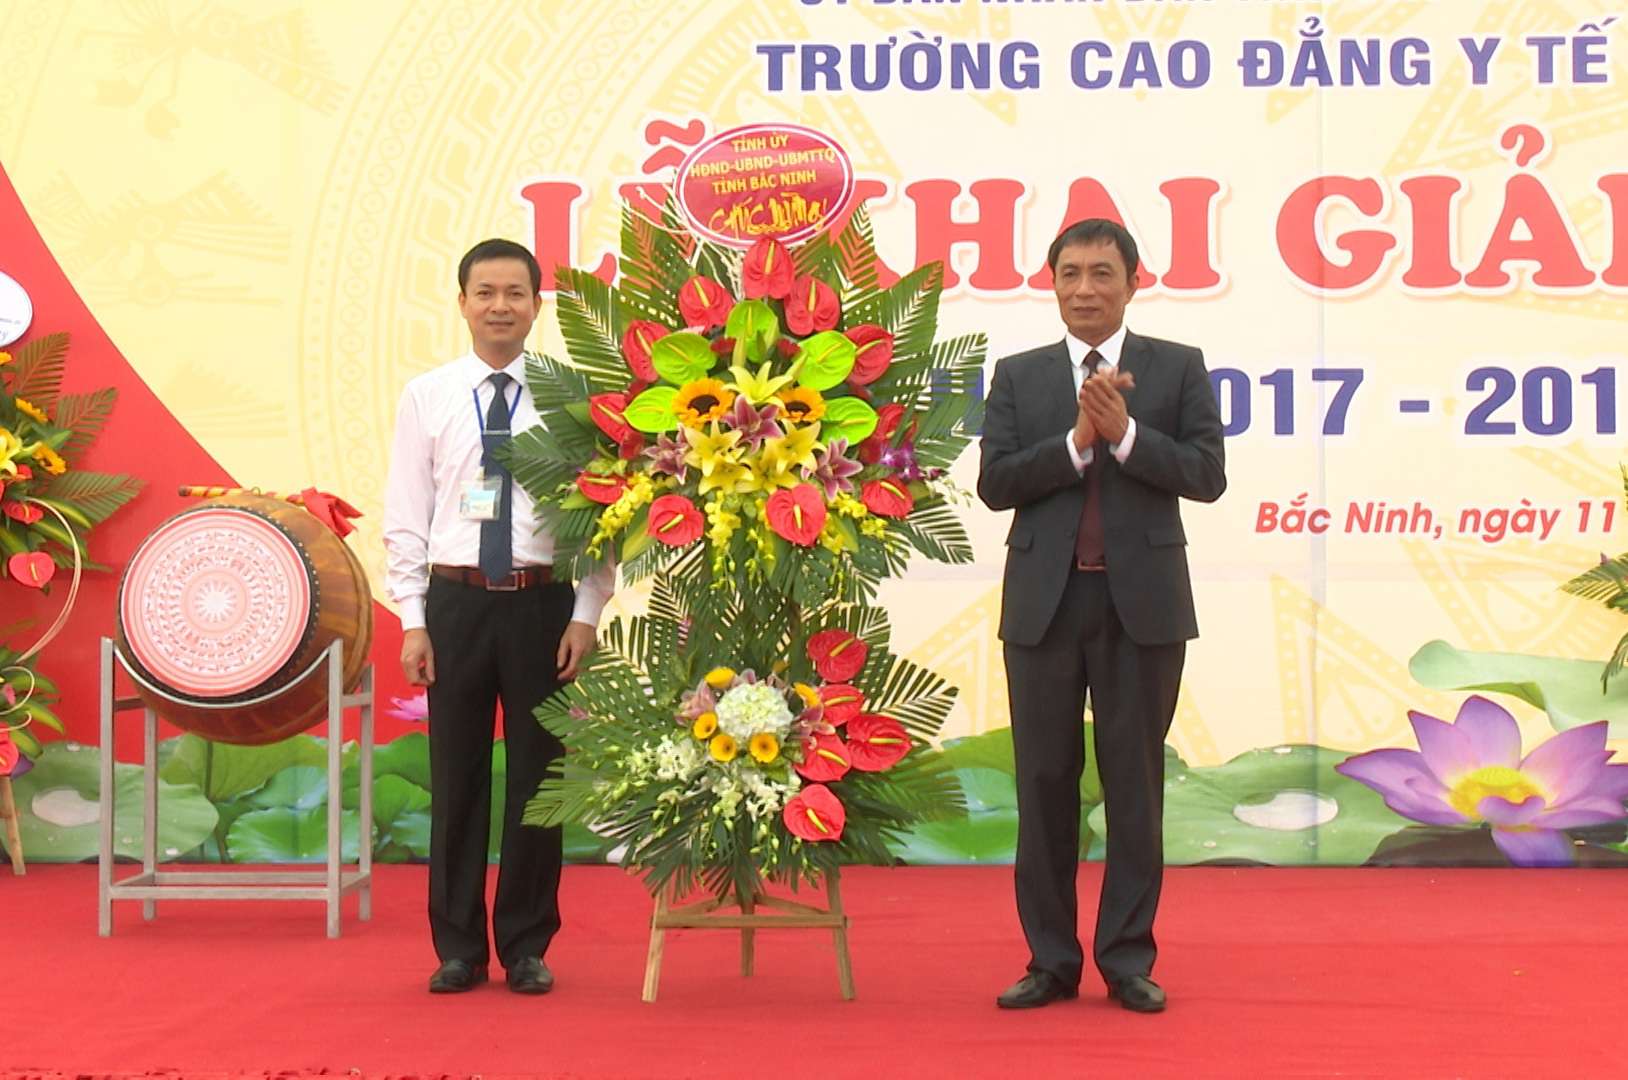 news - Sở Y tế - Cổng thông tin điện tử tỉnh Bắc Ninh